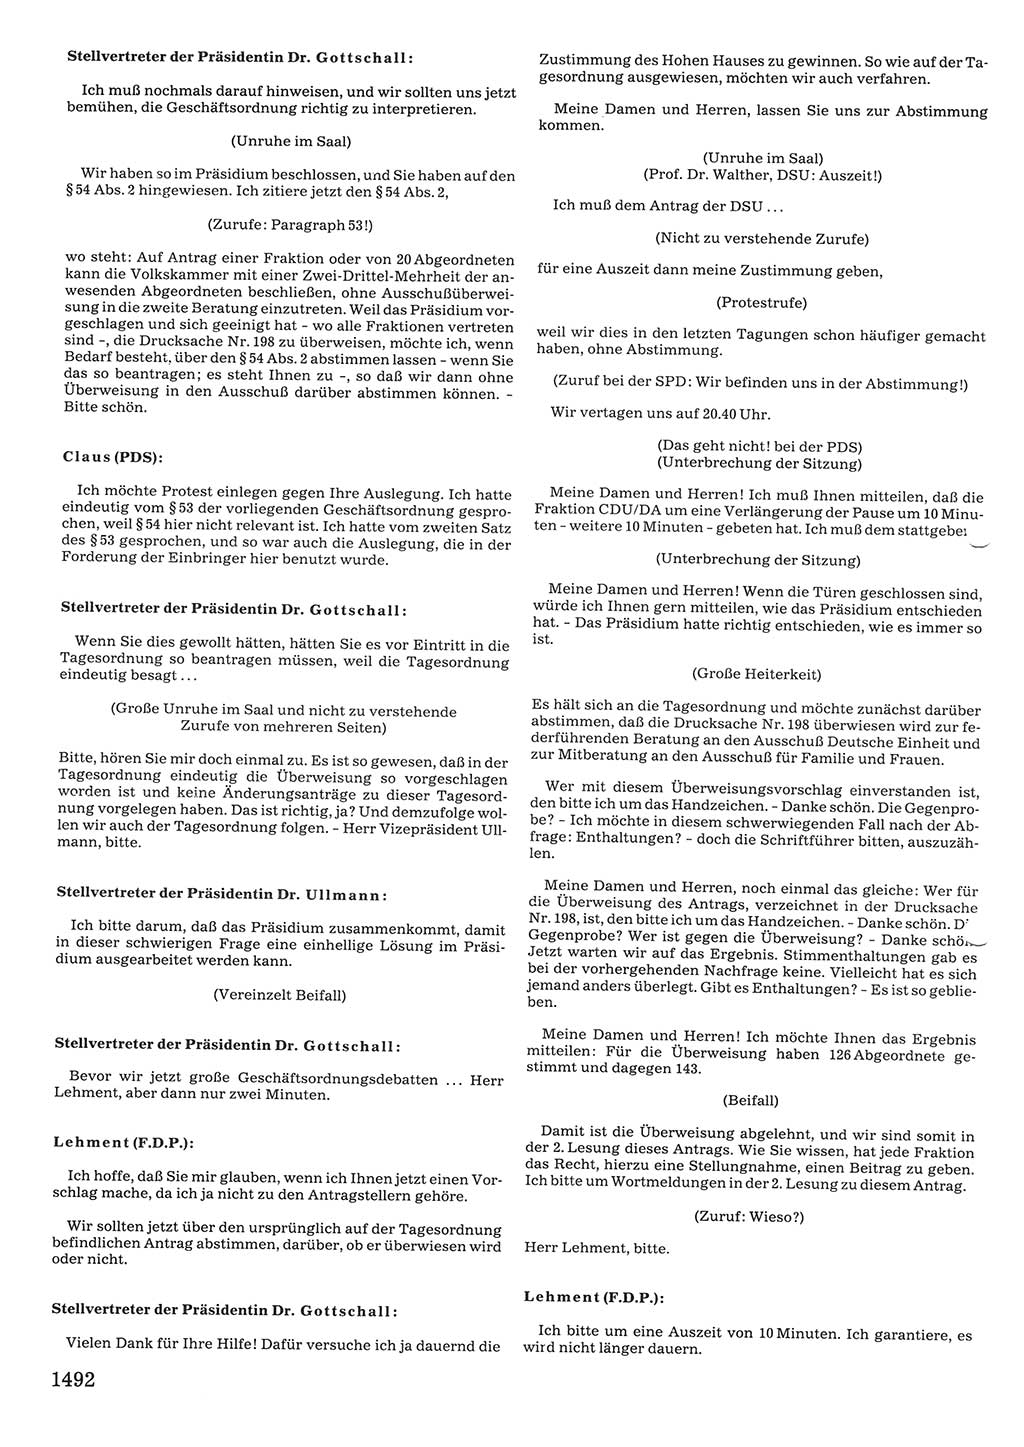 Tagungen der Volkskammer (VK) der Deutschen Demokratischen Republik (DDR), 10. Wahlperiode 1990, Seite 1492 (VK. DDR 10. WP. 1990, Prot. Tg. 1-38, 5.4.-2.10.1990, S. 1492)